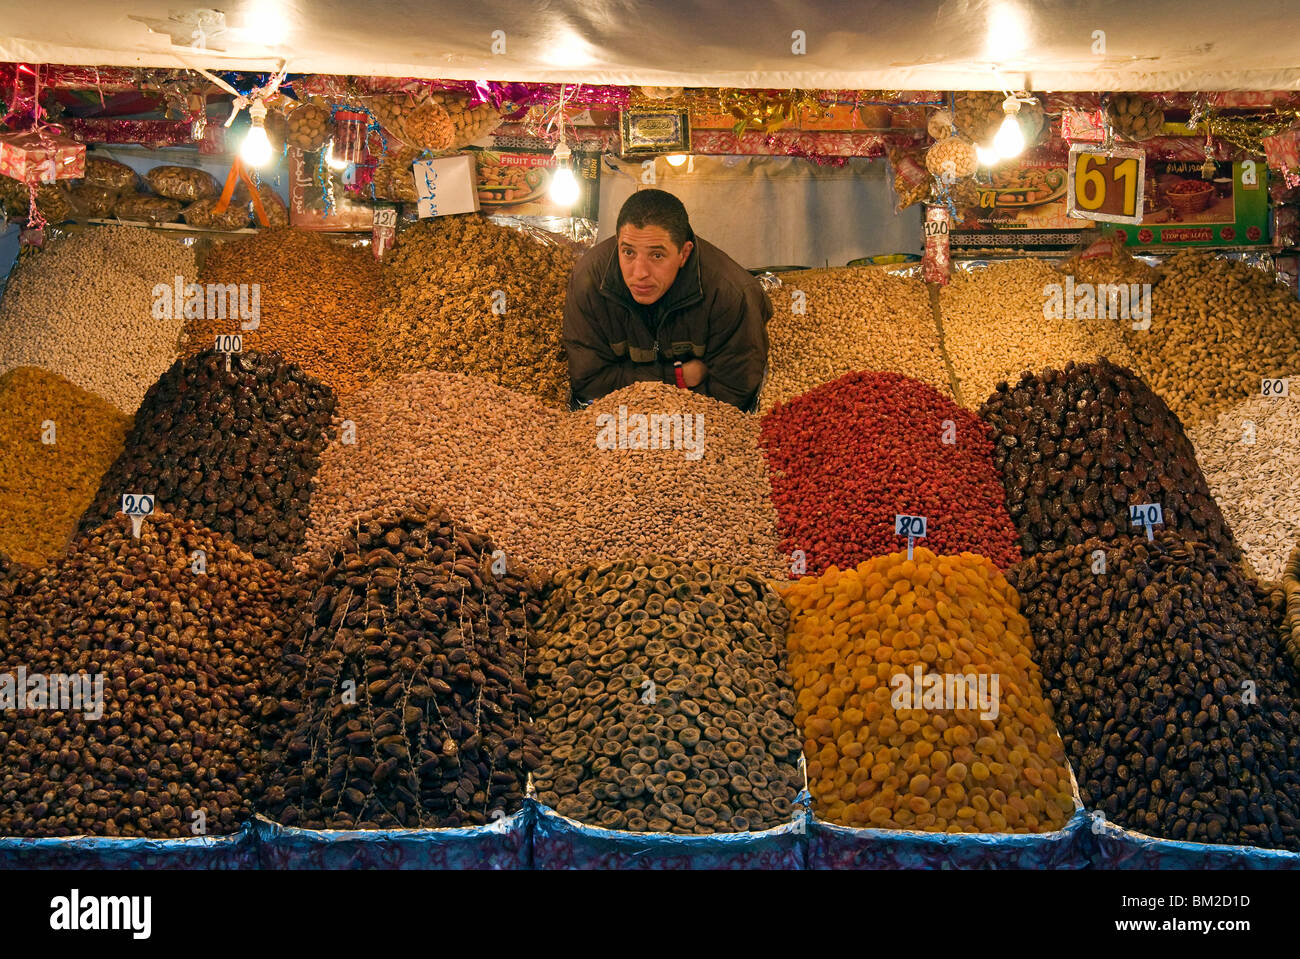 Vendeur de fruits secs, la Place Jemaa el Fna (Place Djemaa el Fna), Marrakech (Marrakech, Maroc) Banque D'Images